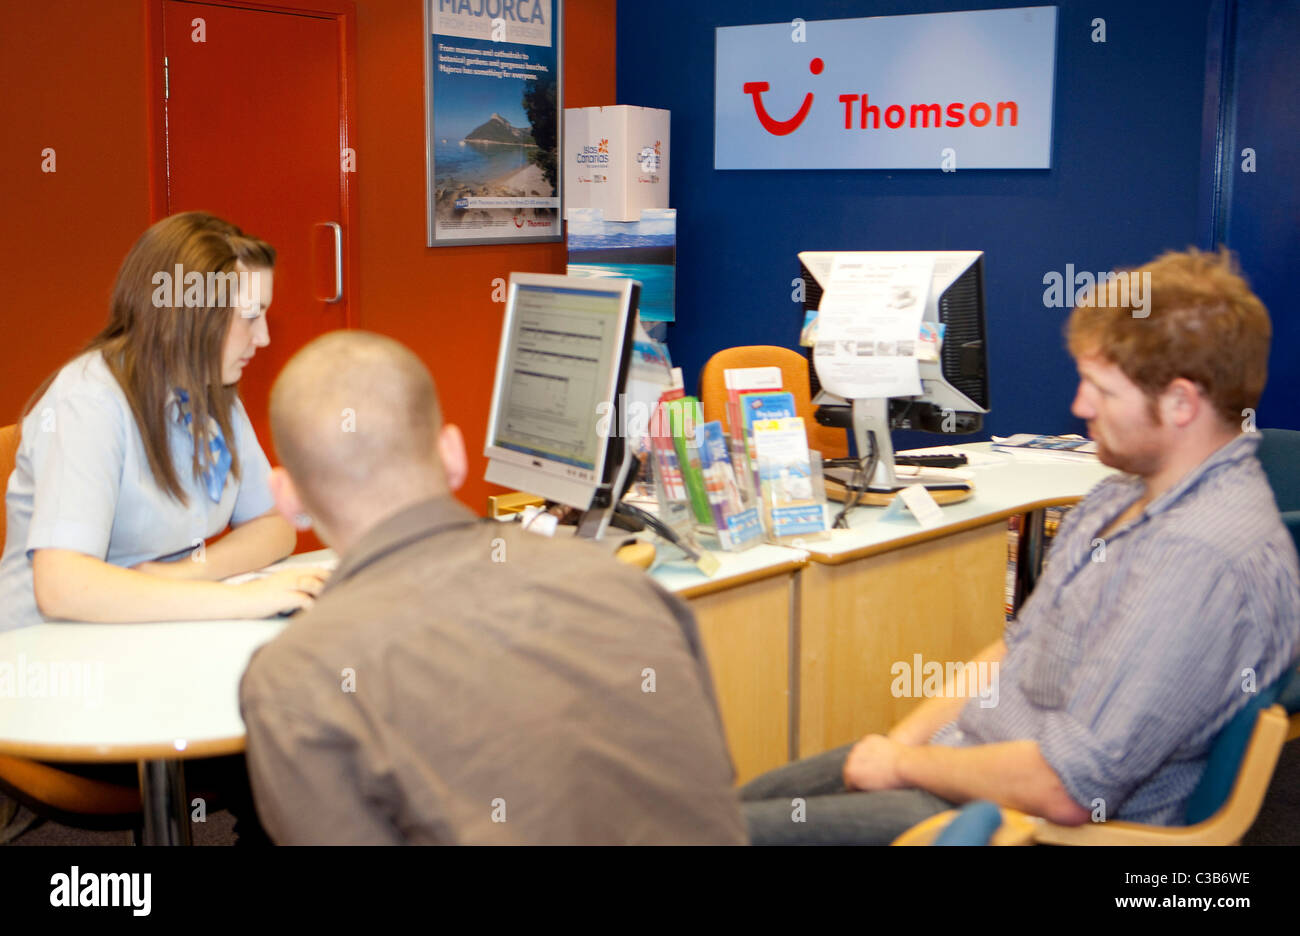 Anschauliches Bild eines Zweiges der Thomson Travel Agency, Teil der TUI Travel Group. Stockfoto